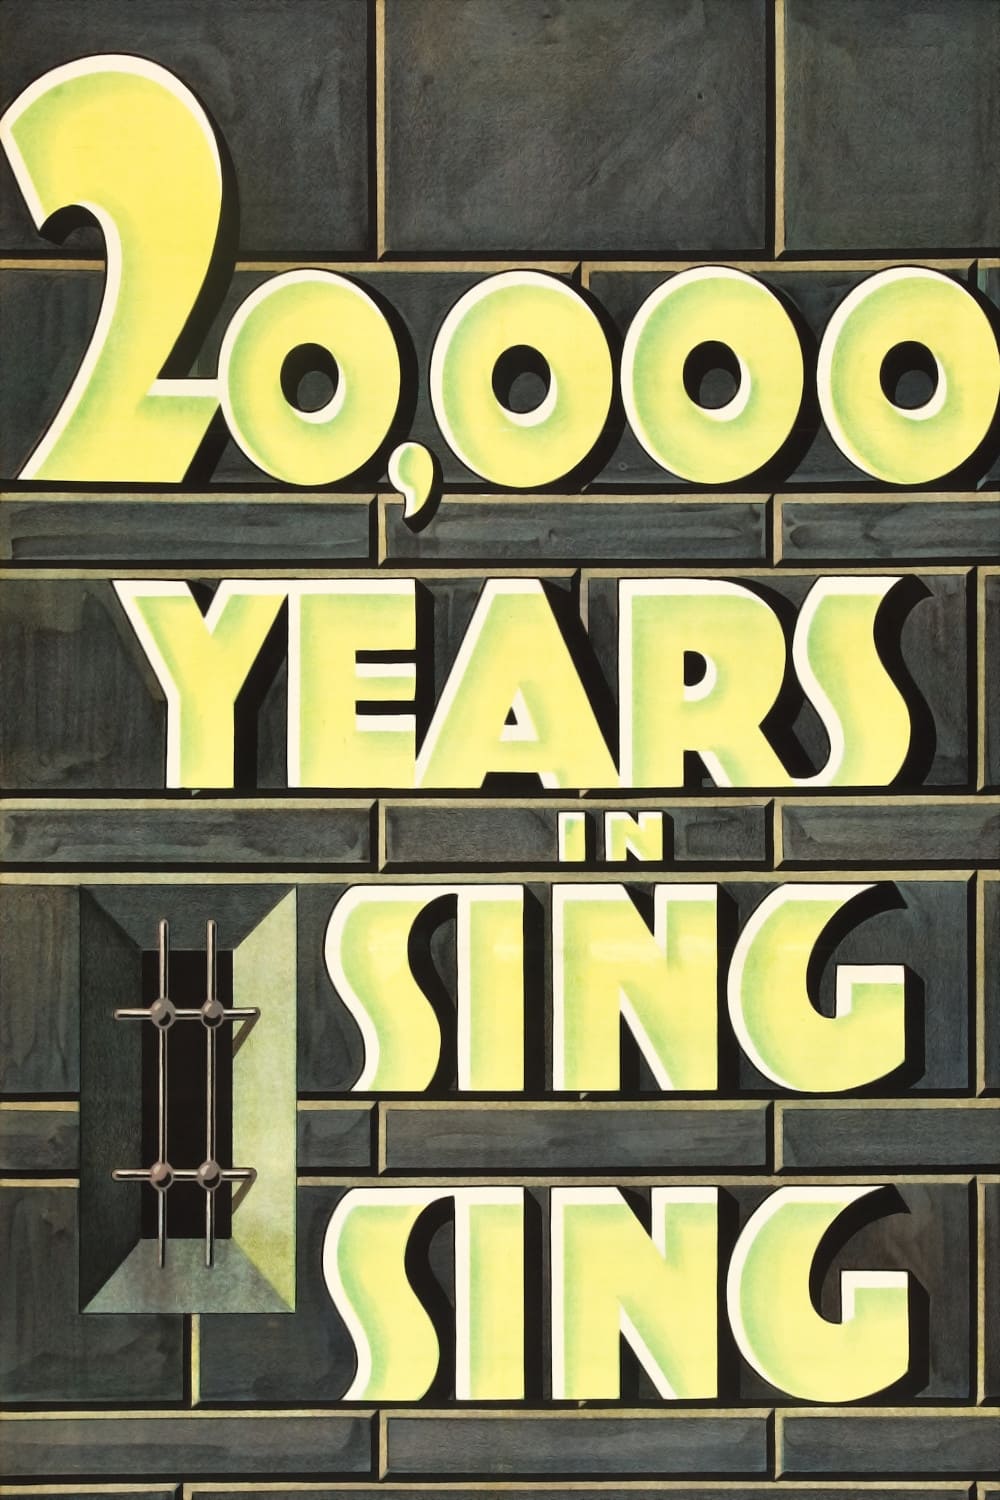 Veinte mil años en Sing Sing (1932)